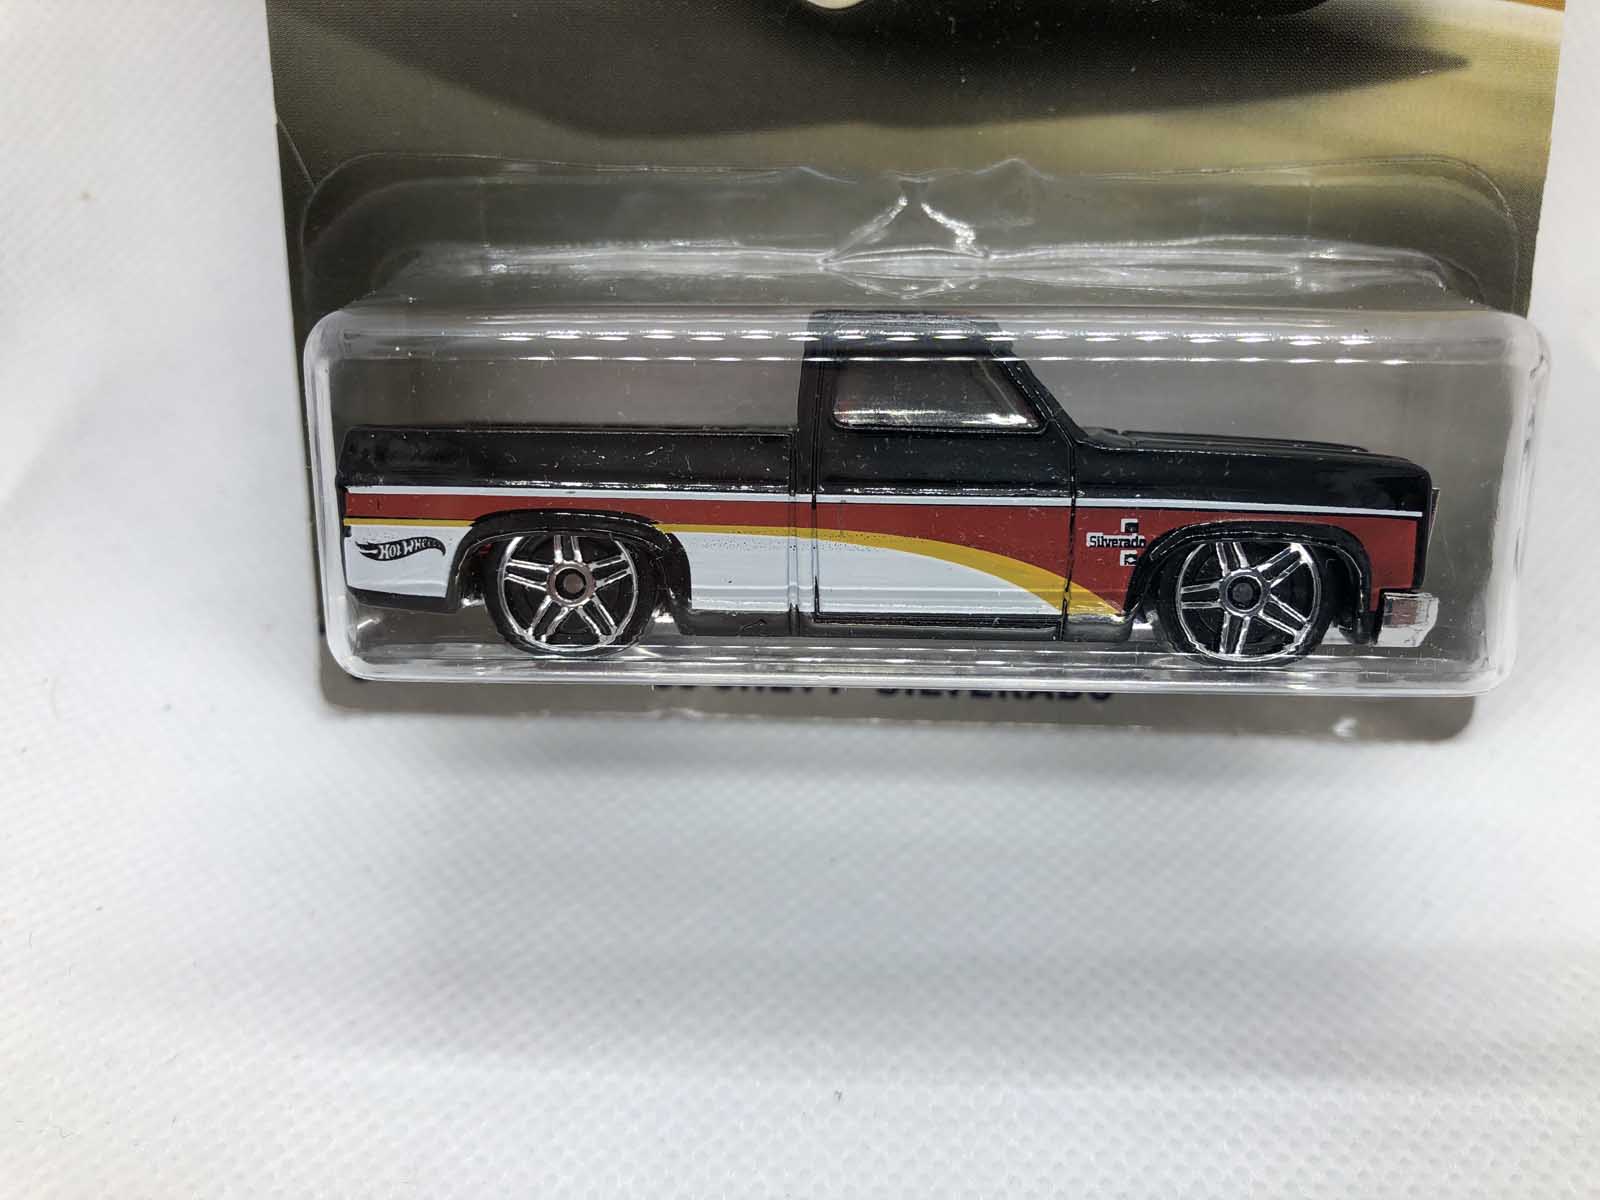 '83 Chevy Silverado